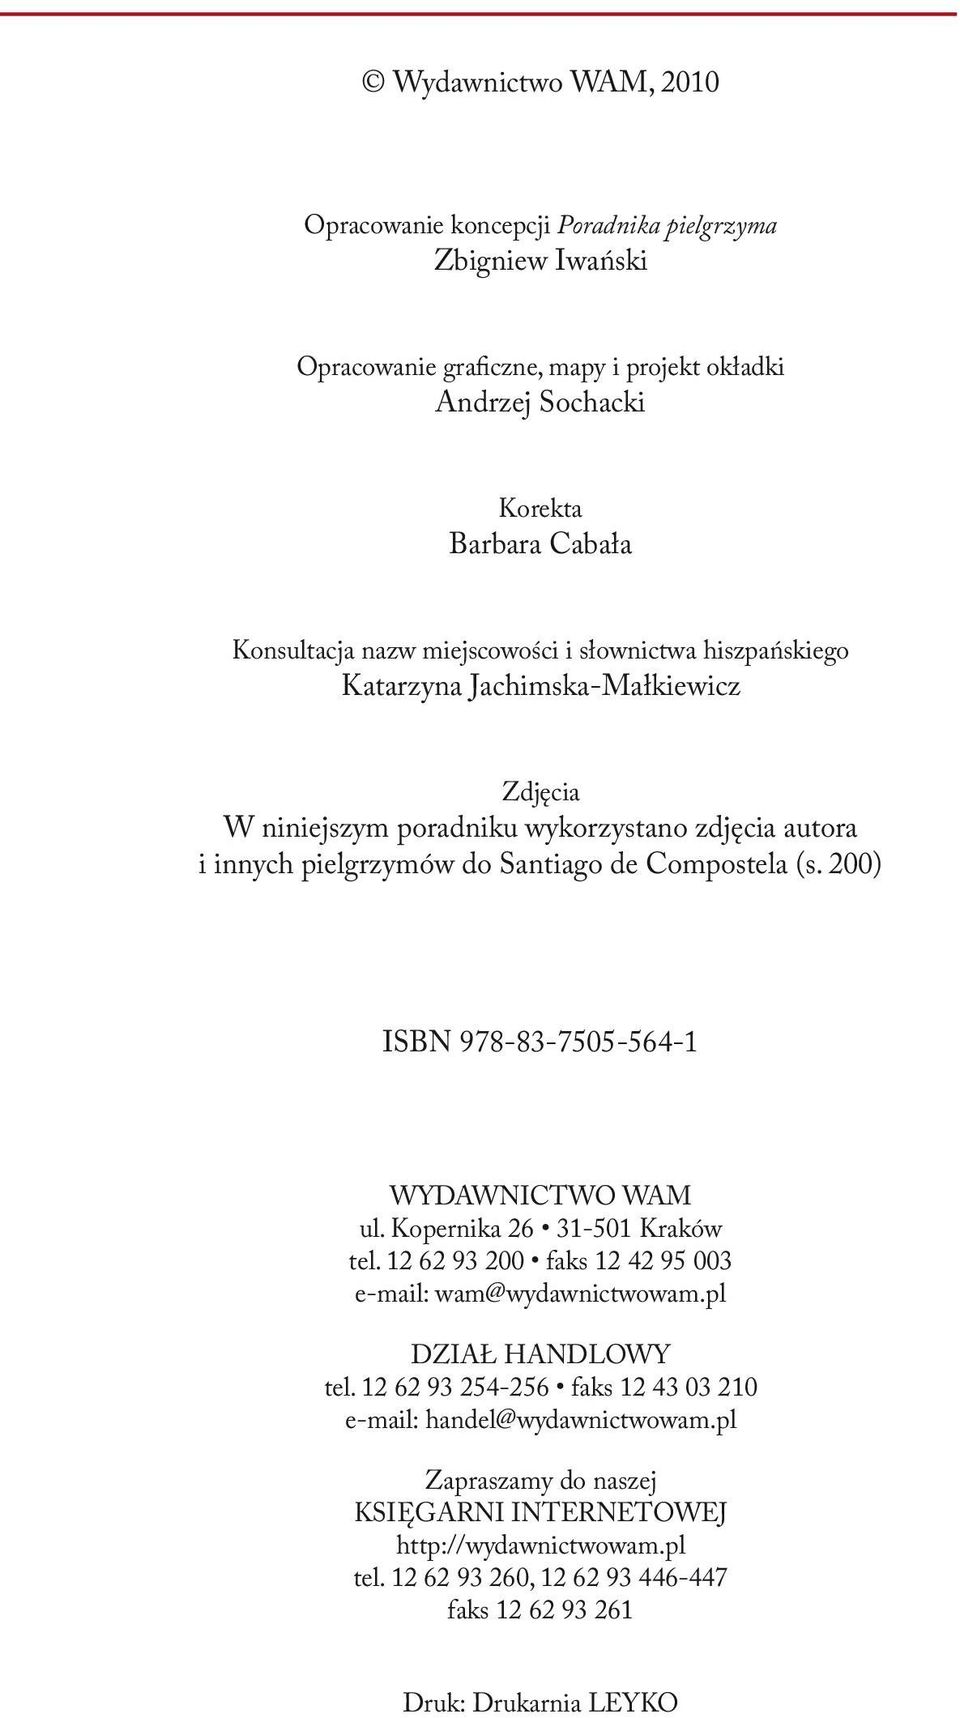 200) ISBN 978-83-7505-564-1 WYDAWNICTWO WAM ul. Kopernika 26 31-501 Kraków tel. 12 62 93 200 faks 12 42 95 003 e-mail: wam@wydawnictwowam.pl DZIAł HANDLOWY tel.